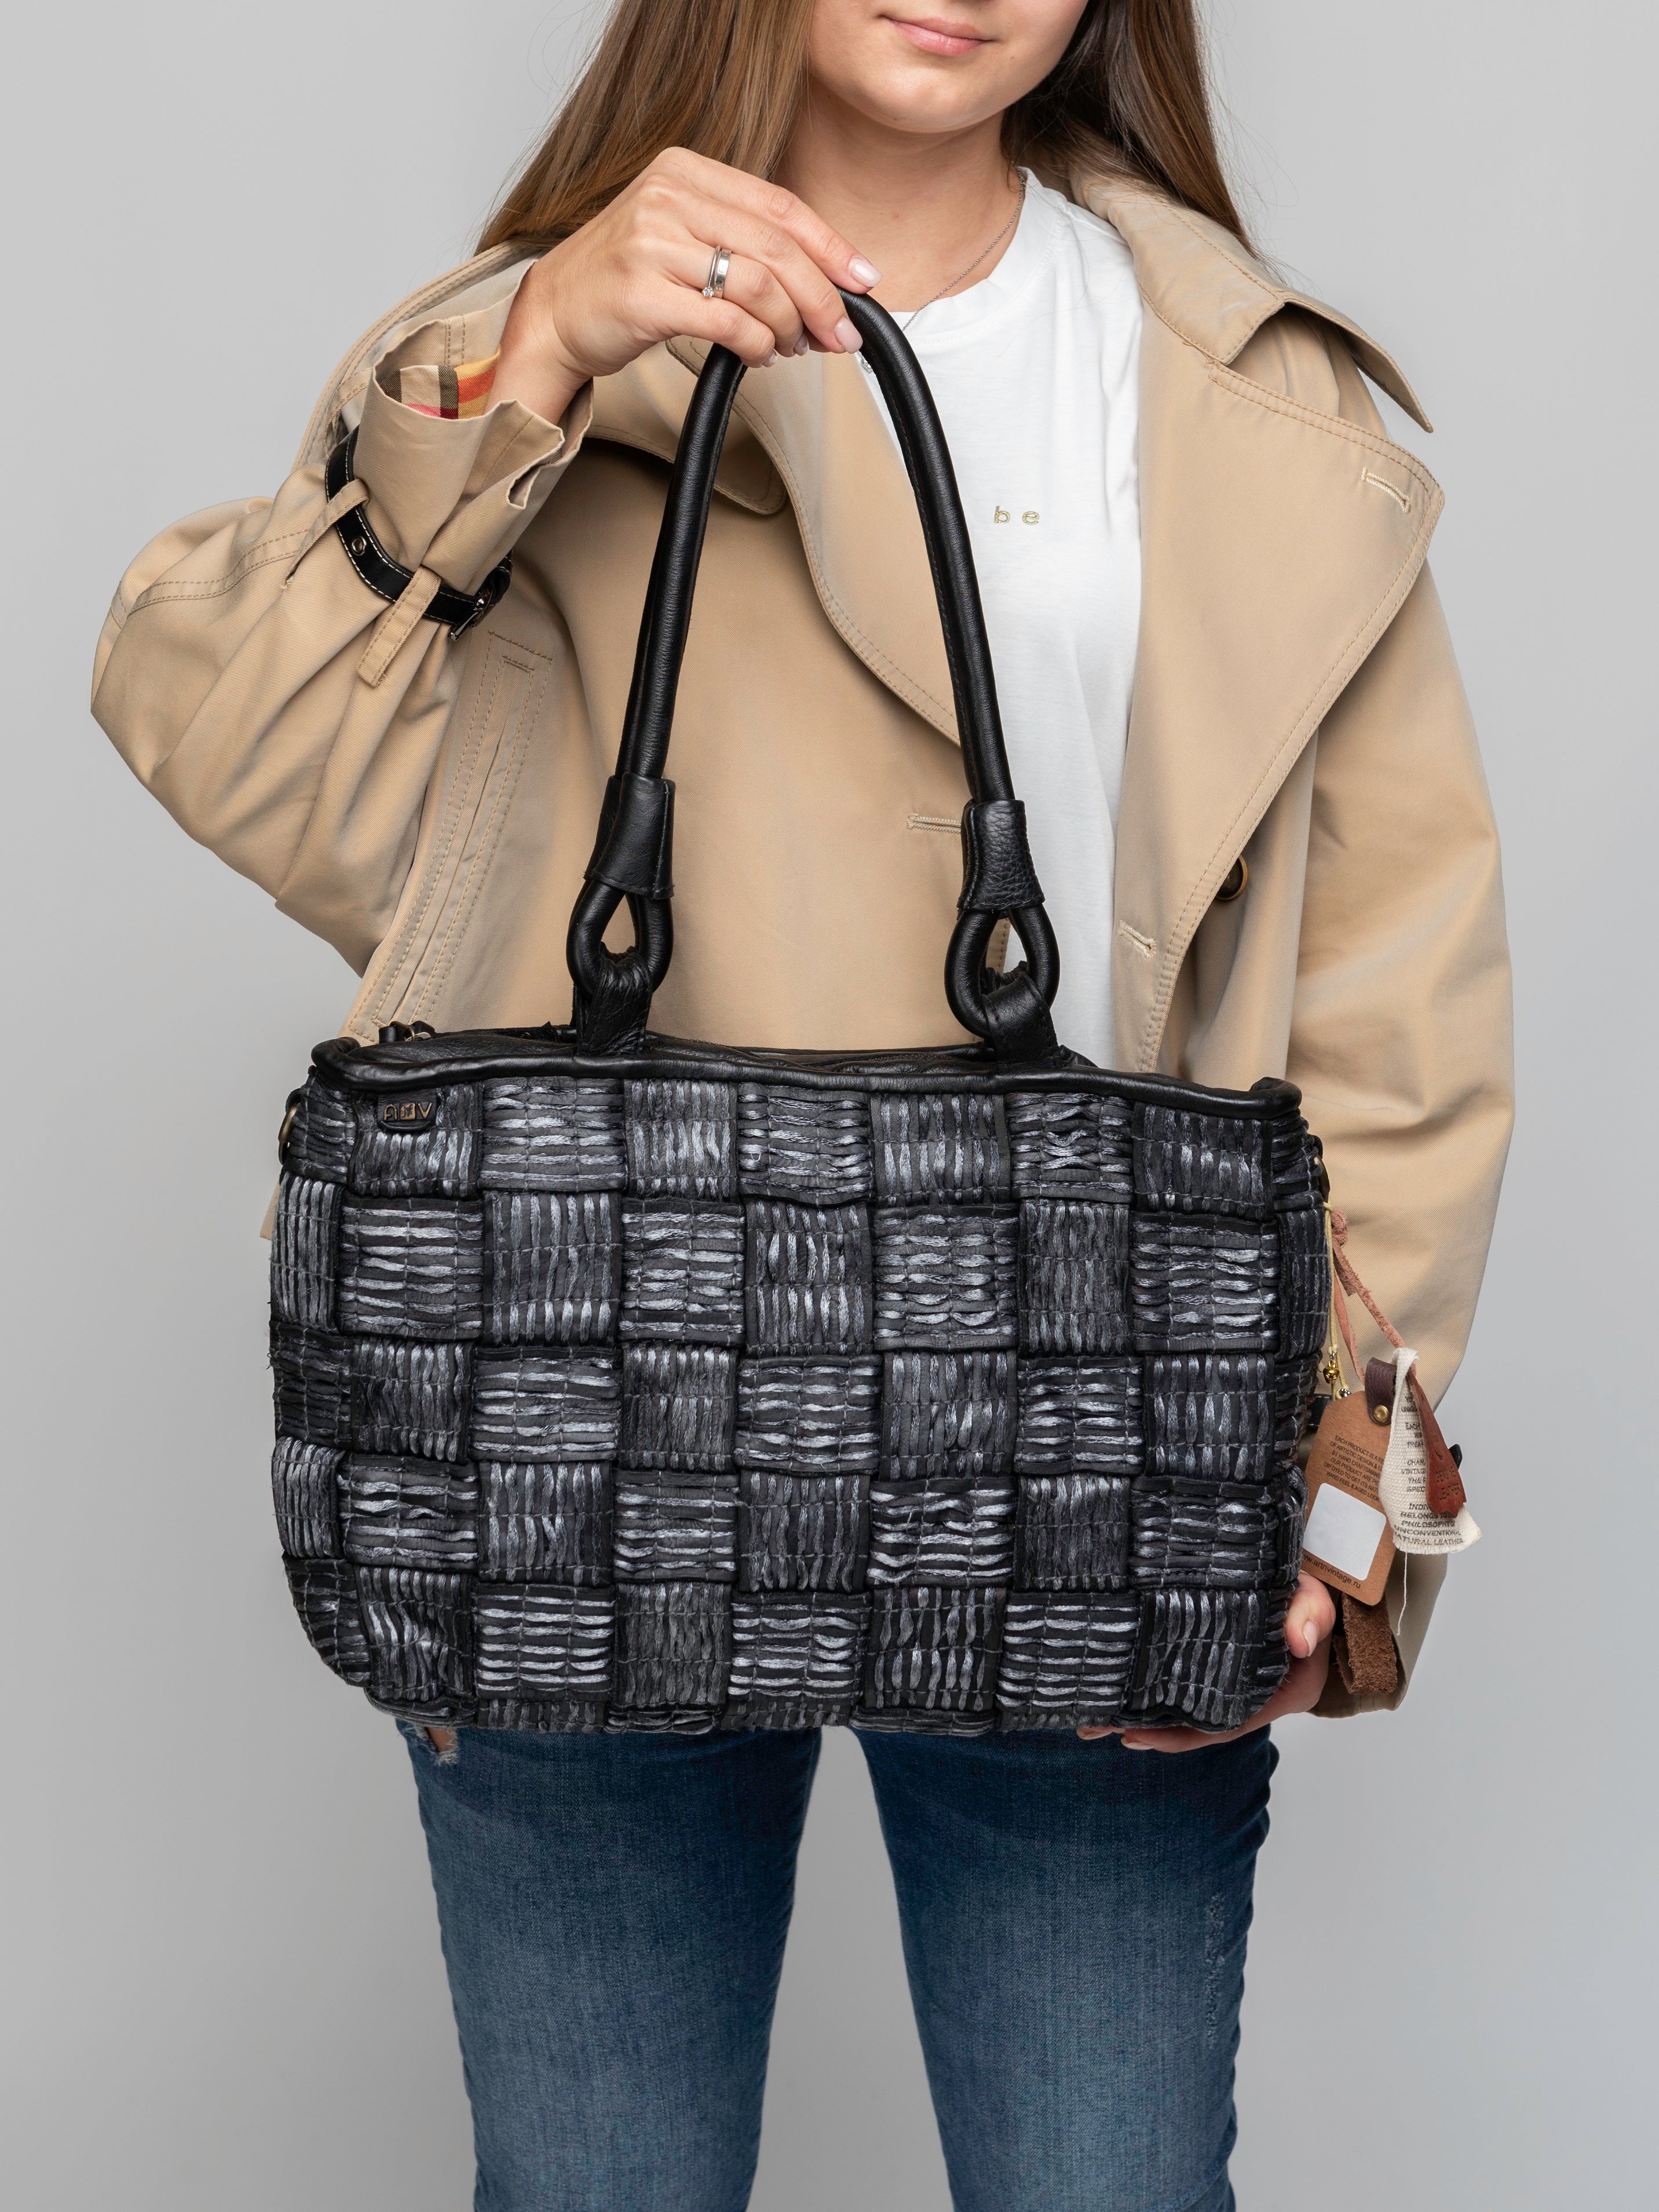 CROWN: Black leather shoulder shopper bag by Art N Vintage